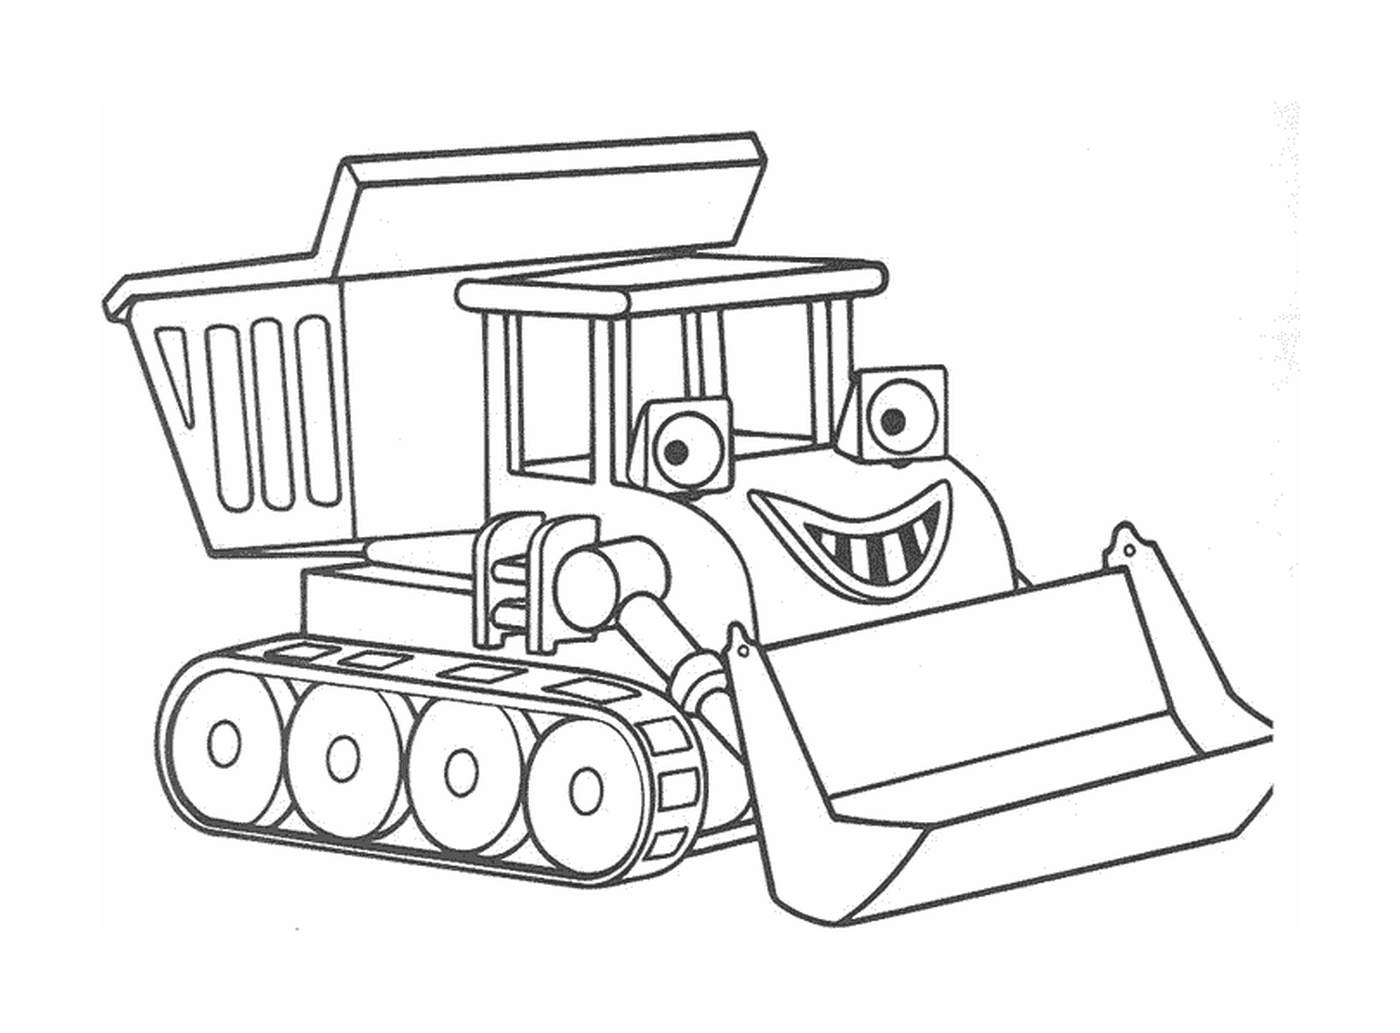  A bulldozer with a smile 